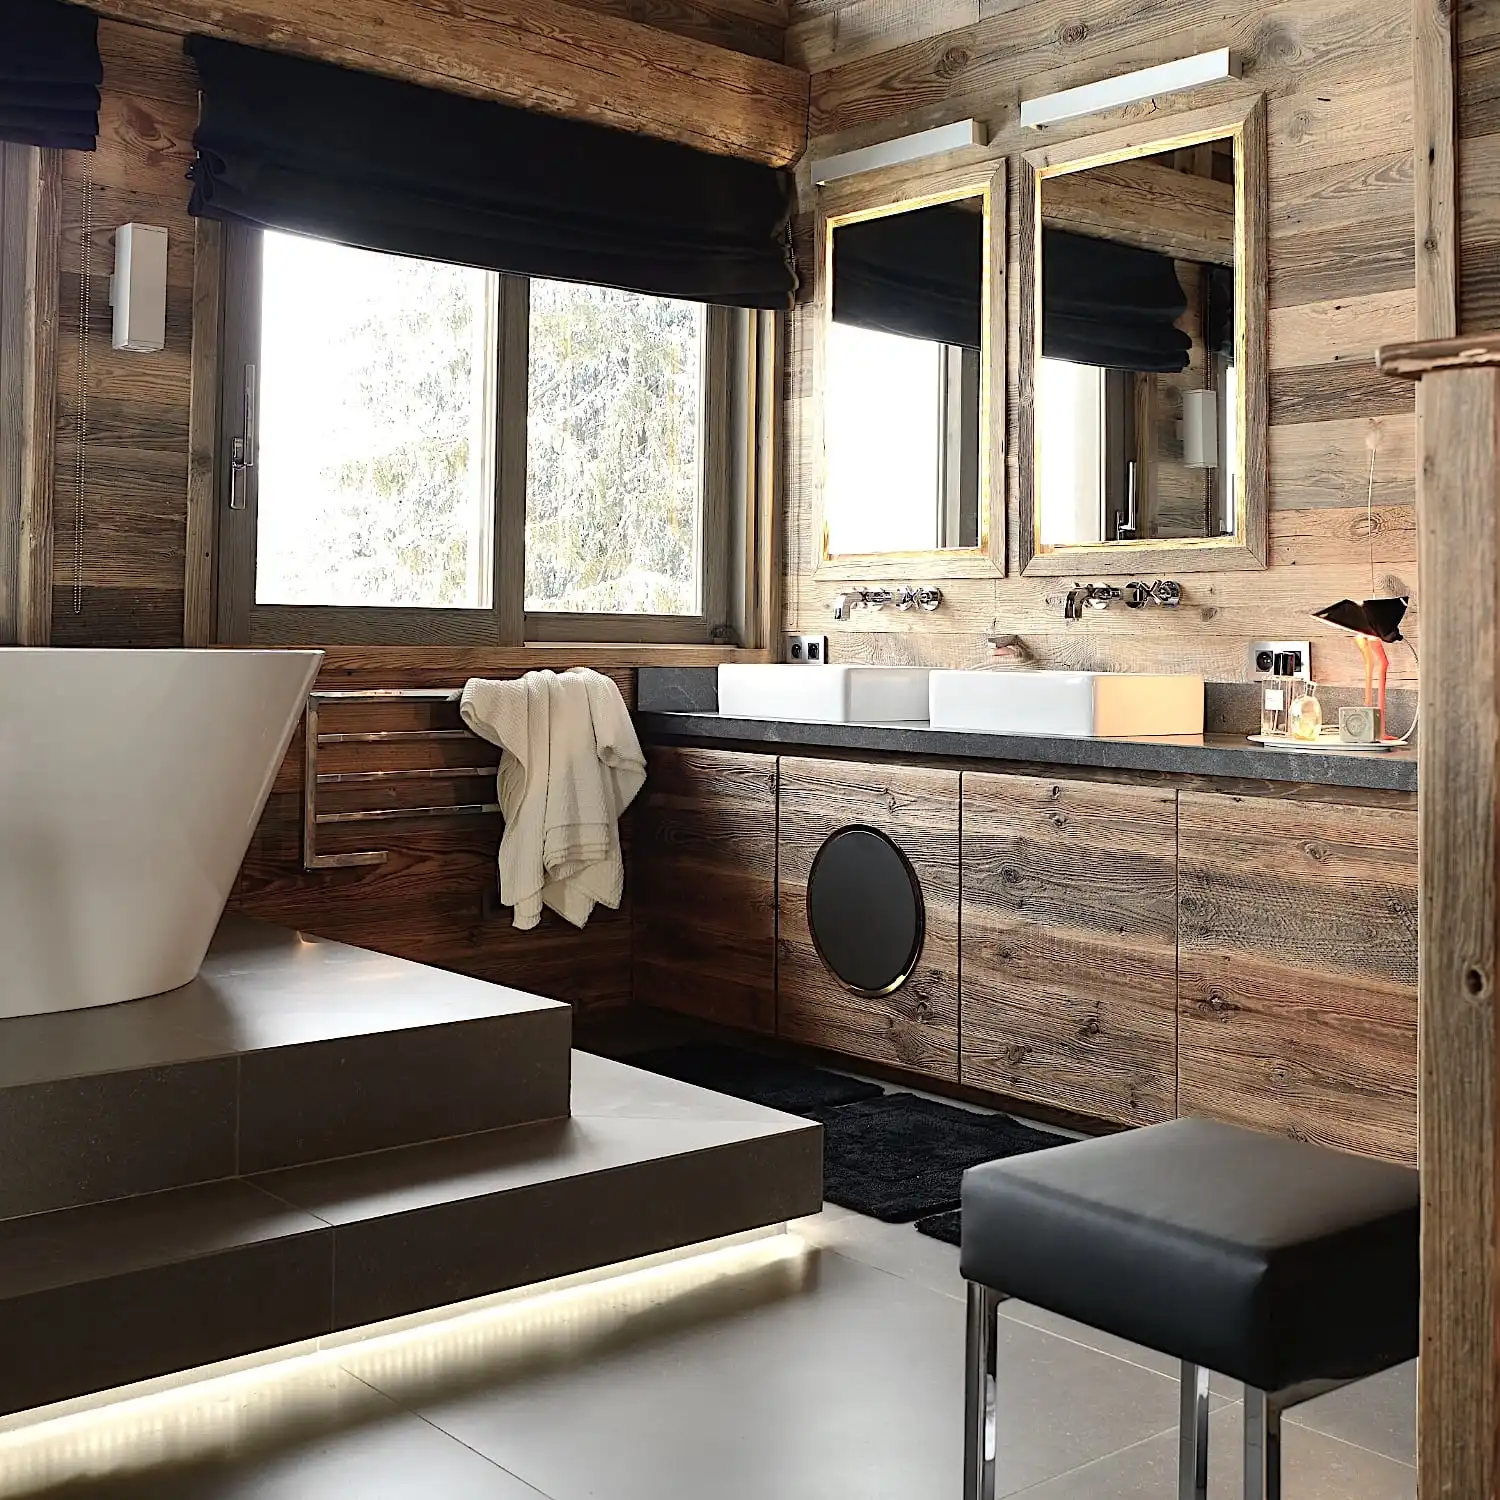  Une luxueuse salle de bains en bois comprenant une baignoire autoportante, des lavabos jumeaux, des luminaires modernes et une vue enneigée à l'extérieur de la fenêtre lambrissée de 3 plis vieux bois. 